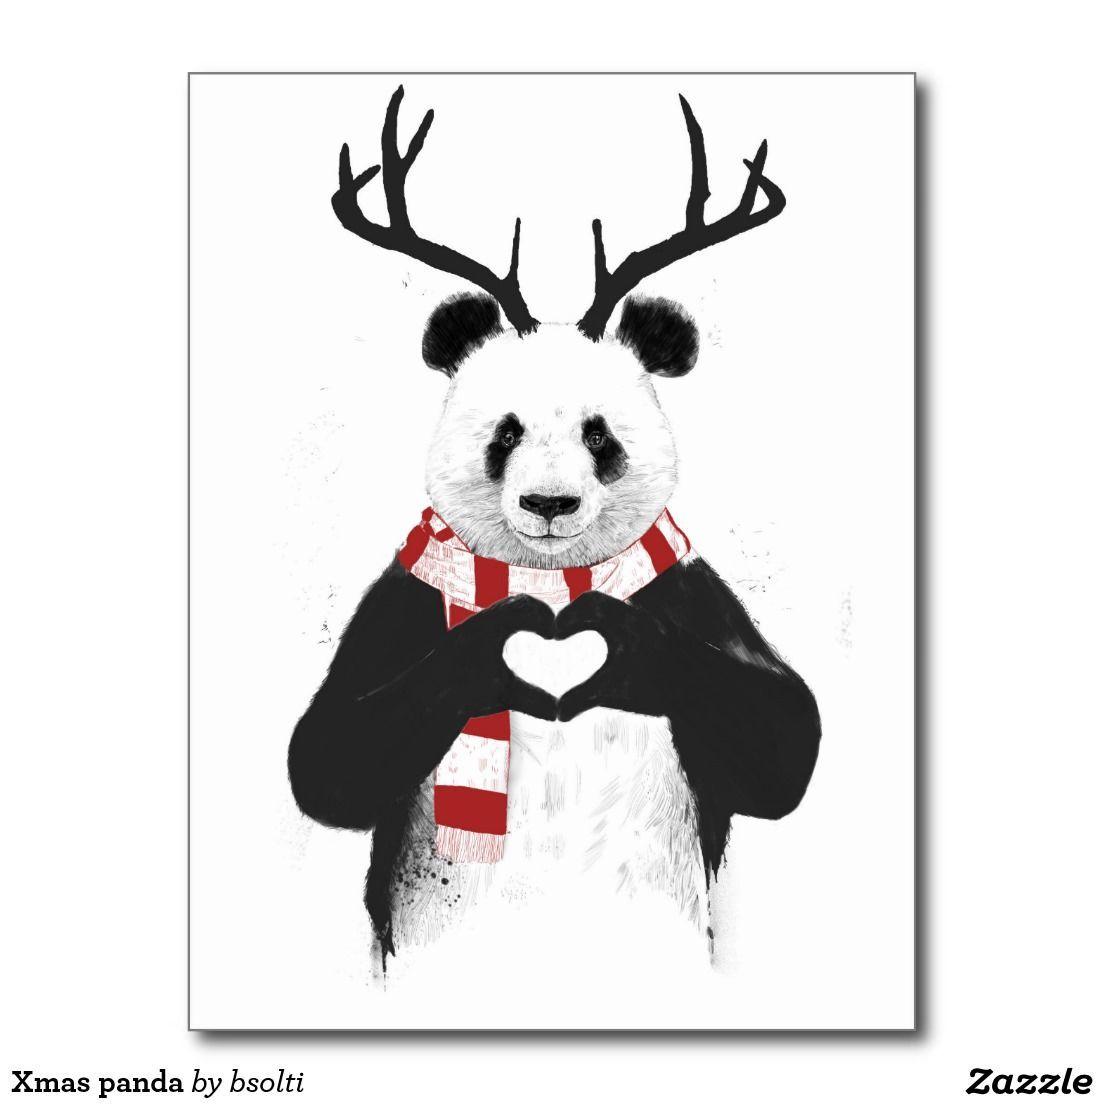 Xmas panda holiday postcard. p a n d a. Panda, Panda